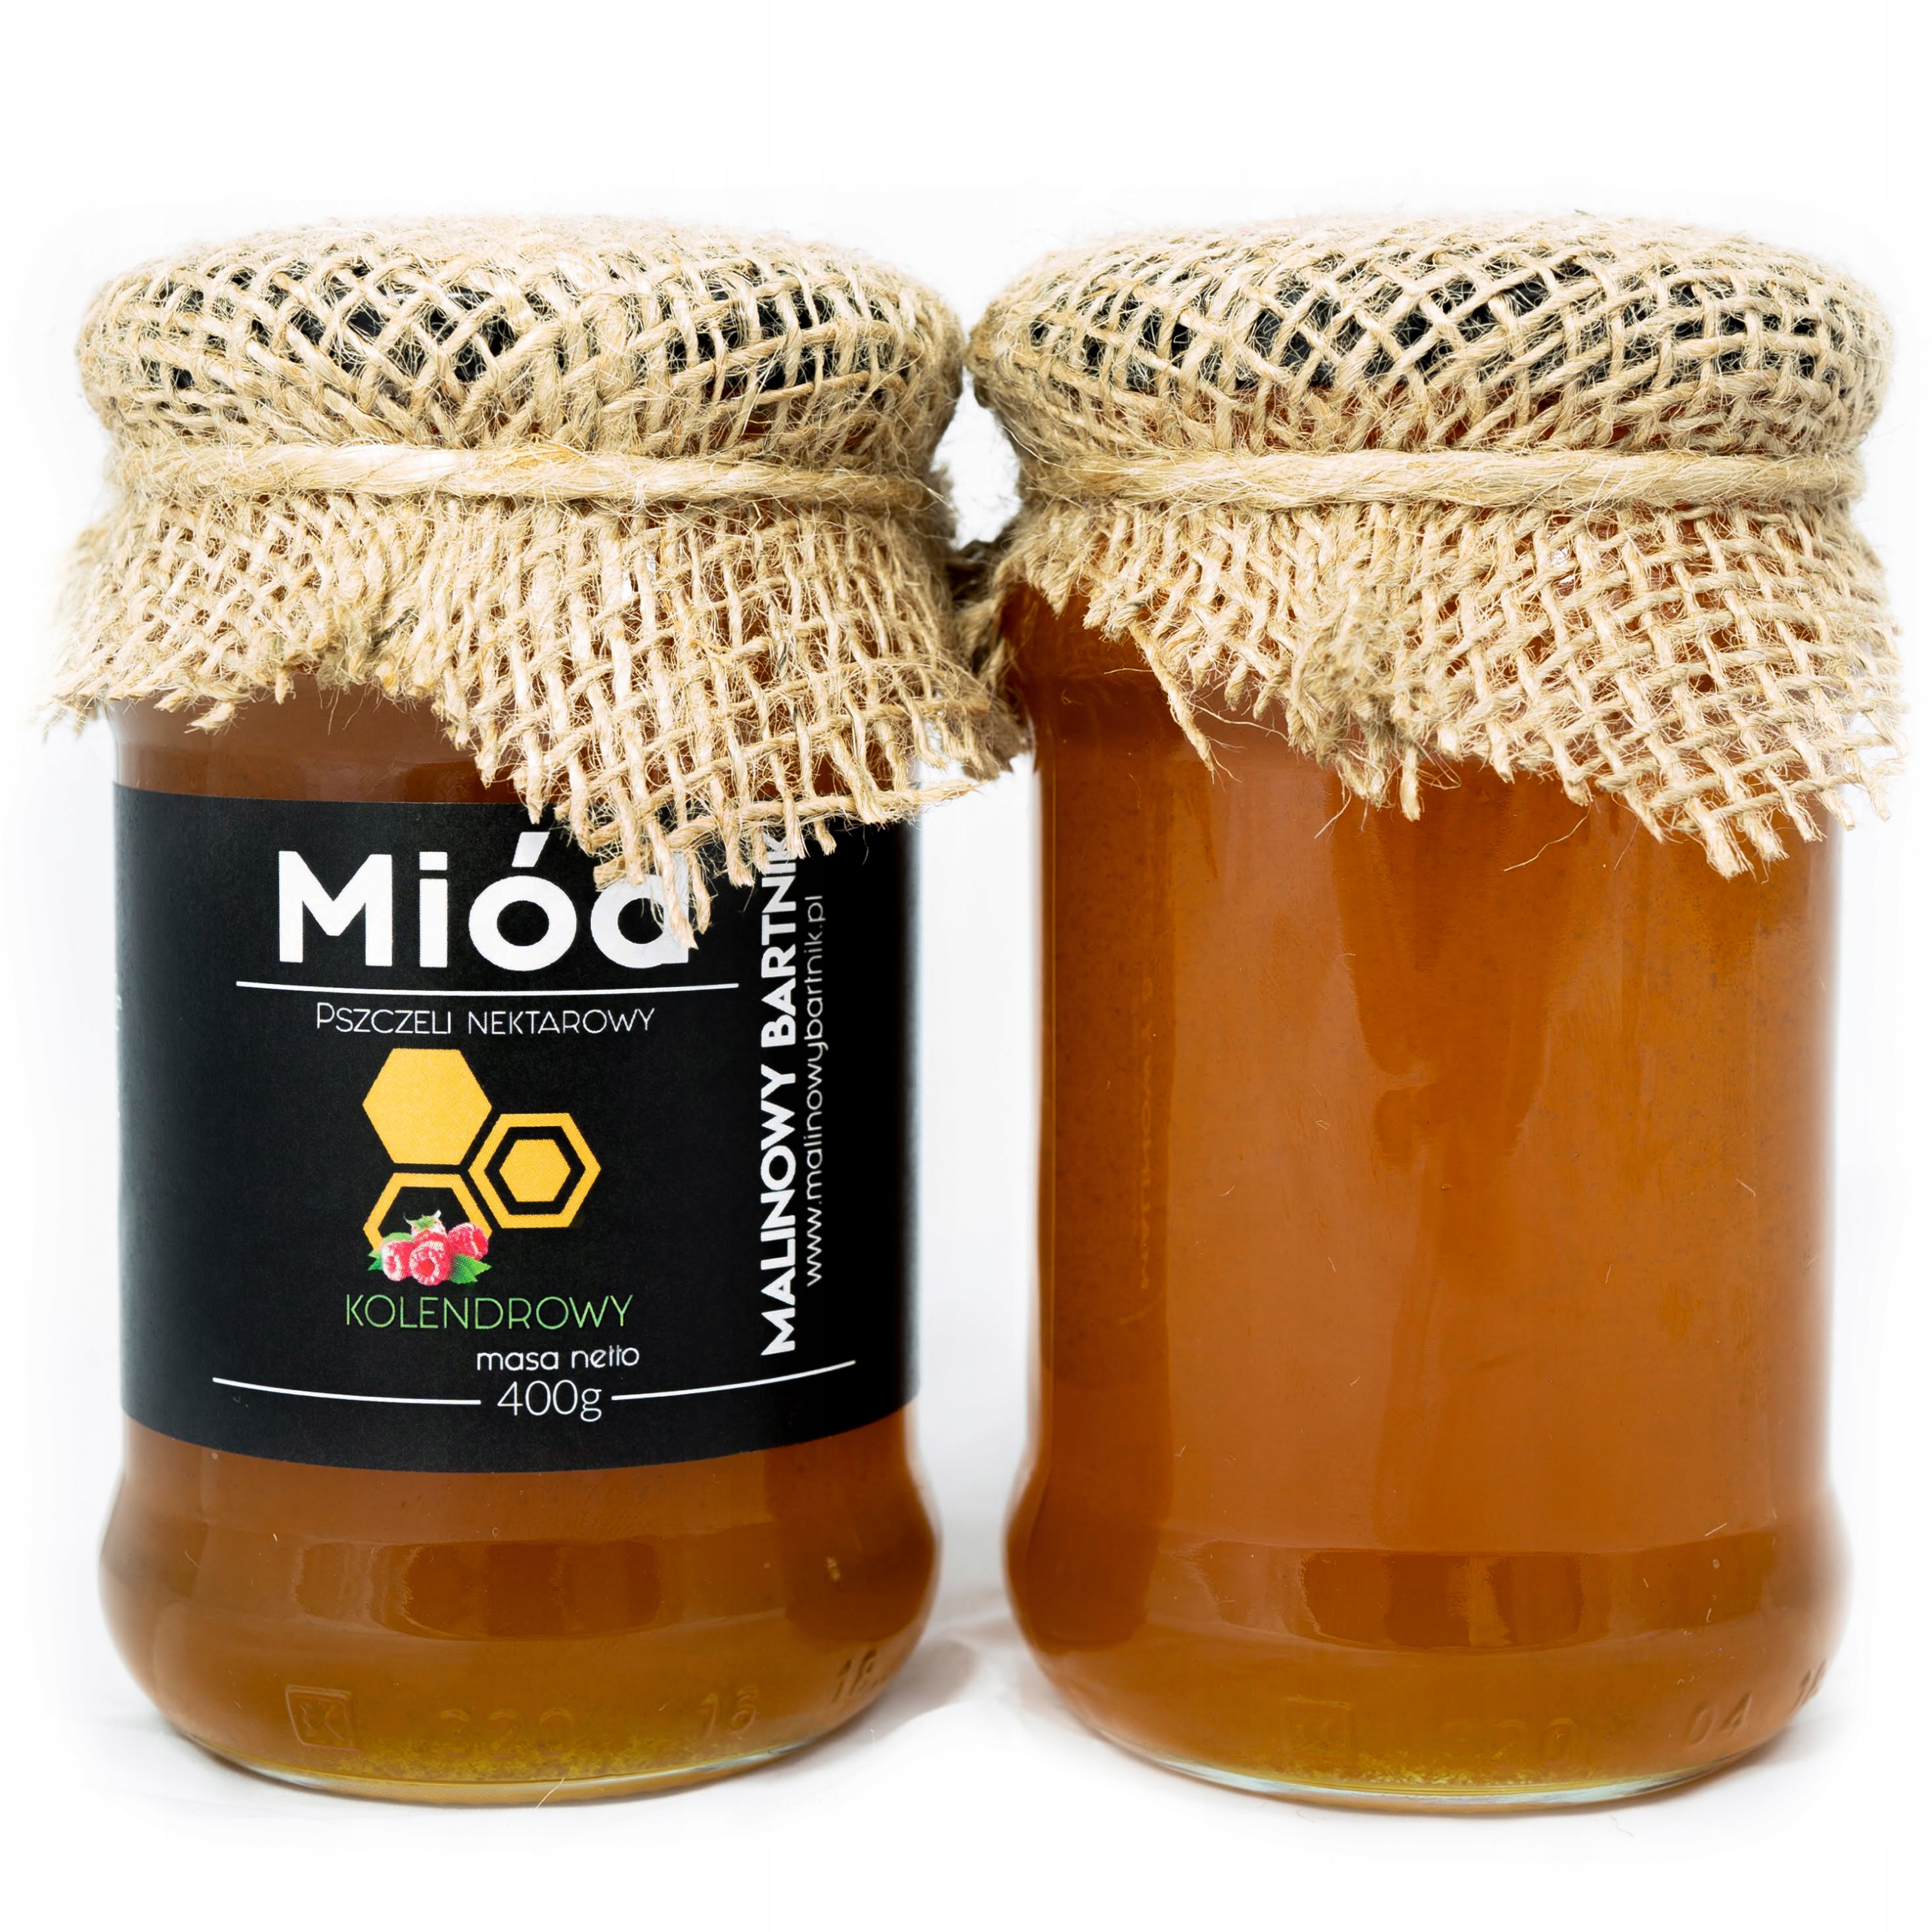 Мед кориандр. Мед из кориандра. Мёд кориандровый. Мёд кориандровый медовый в. Мёд кориандровый, 500 г.